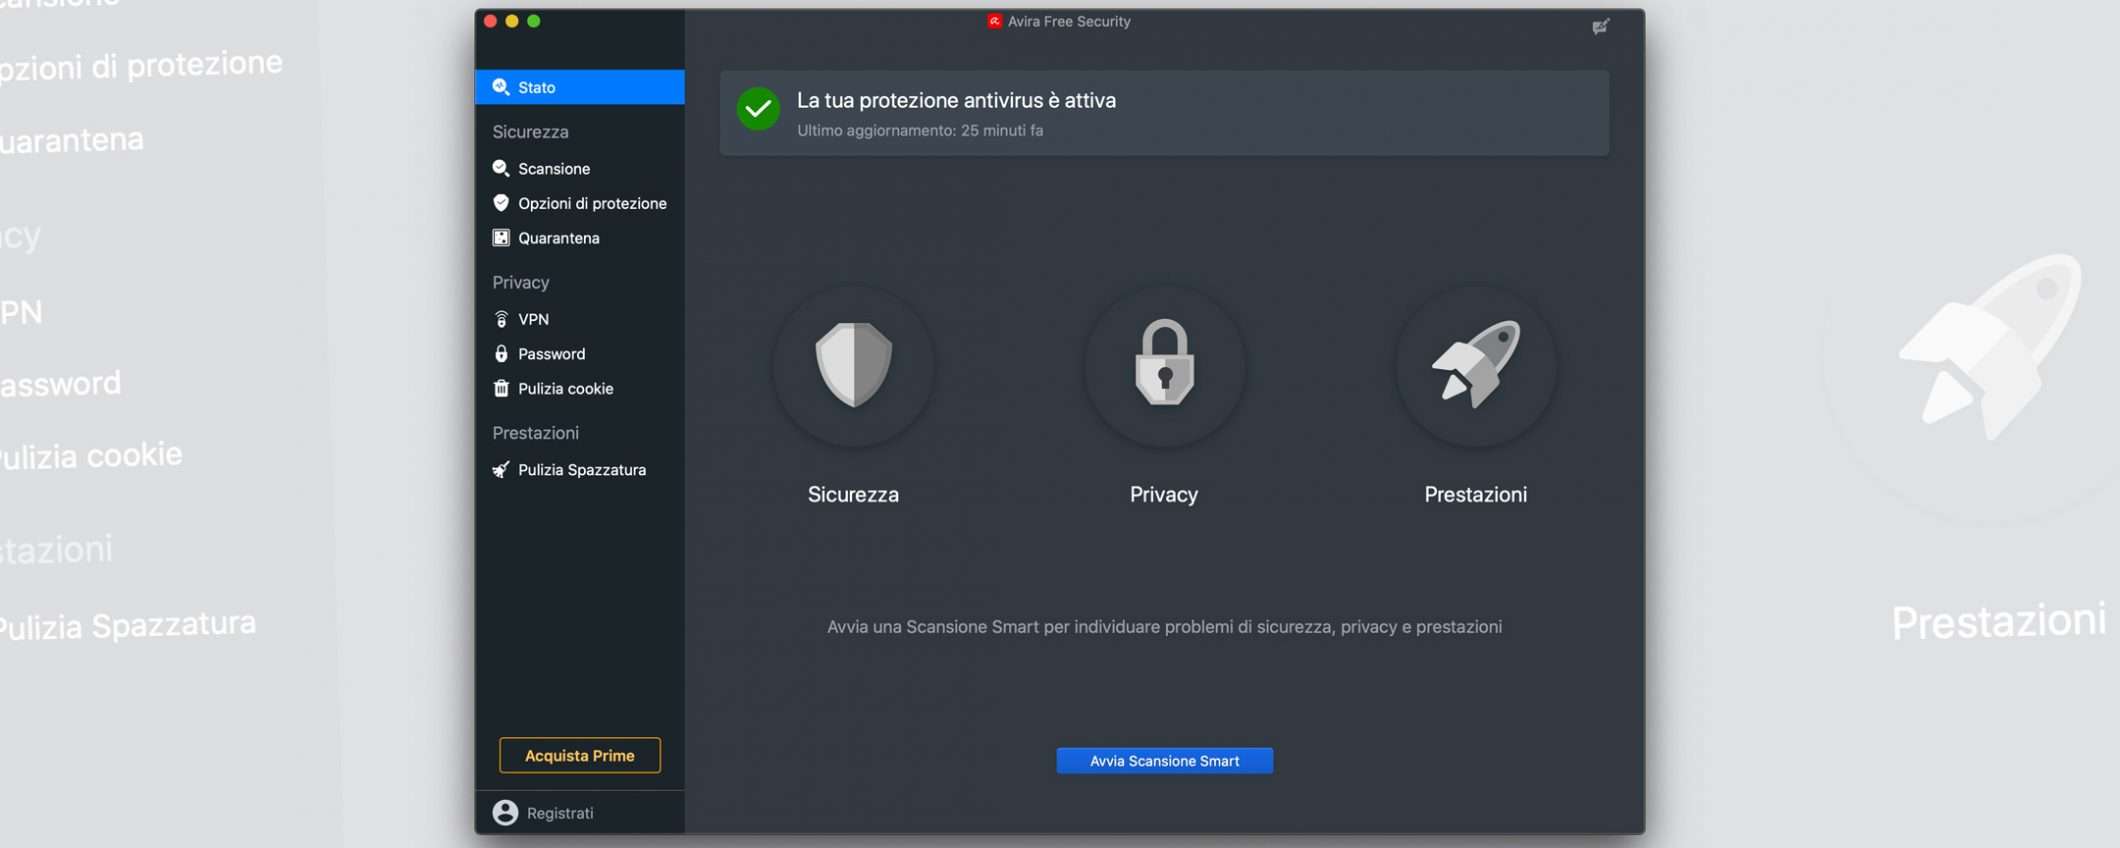 Il nuovo Avira Security per Mac: Free e Prime